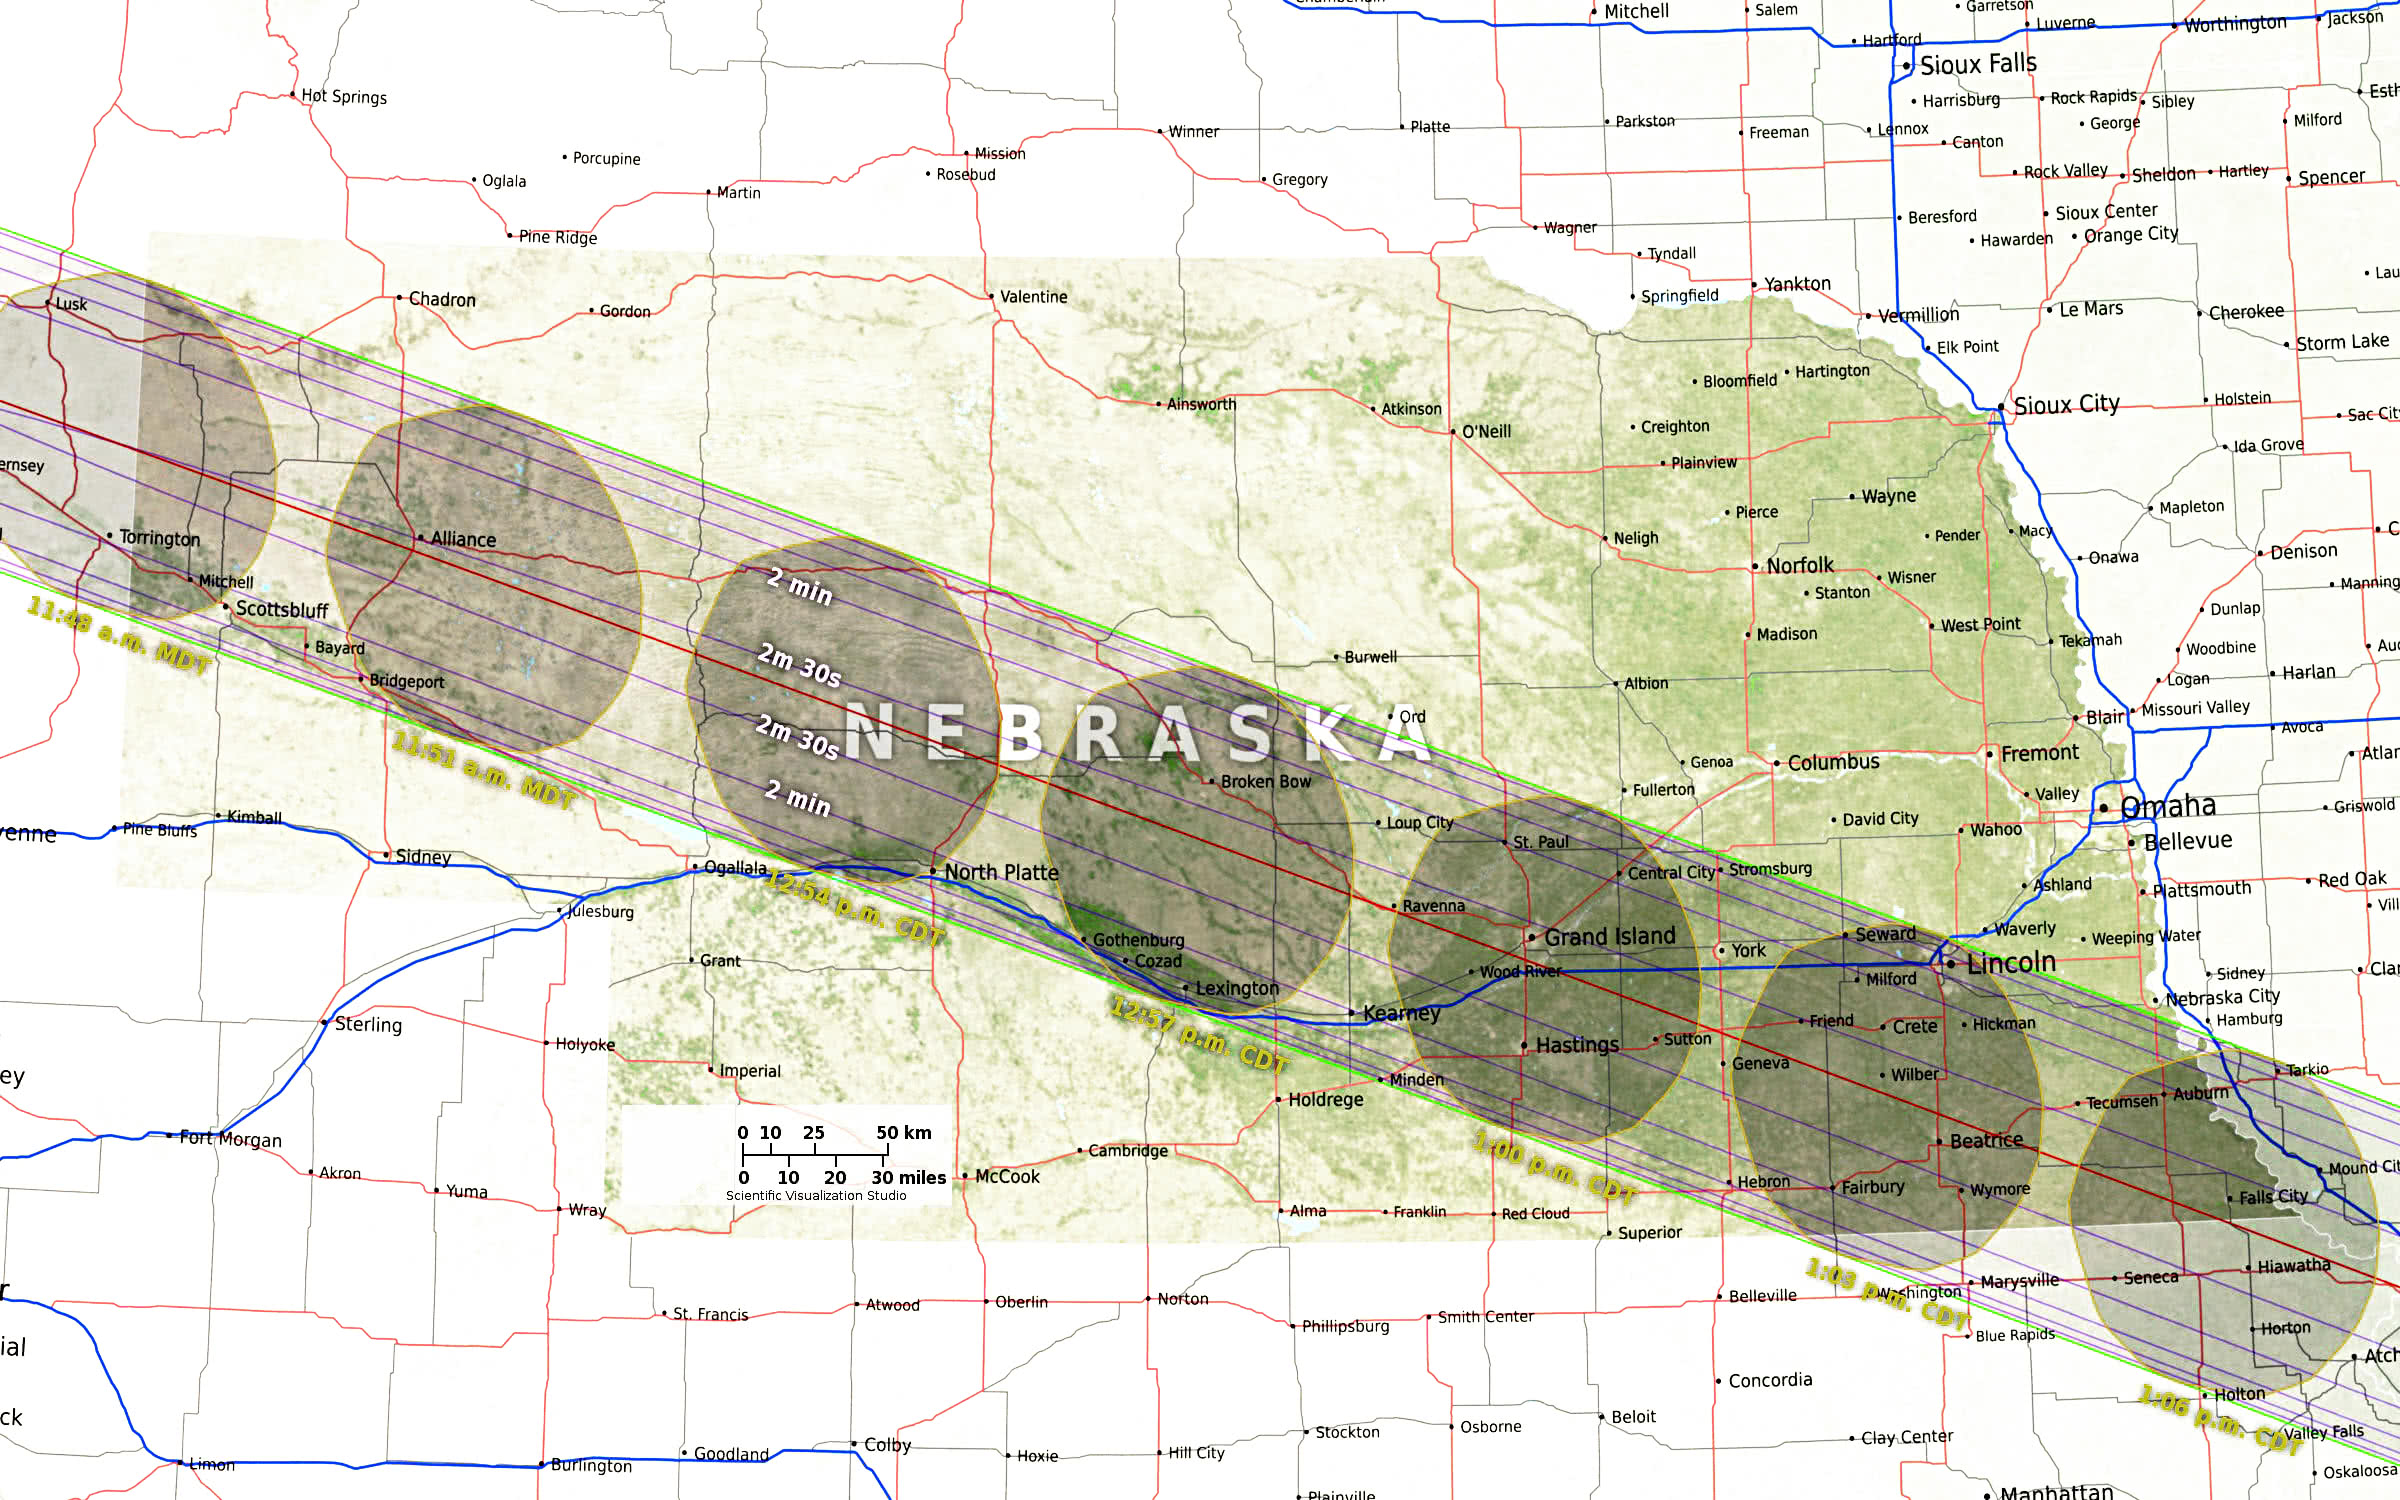 Nebraska eclipse path